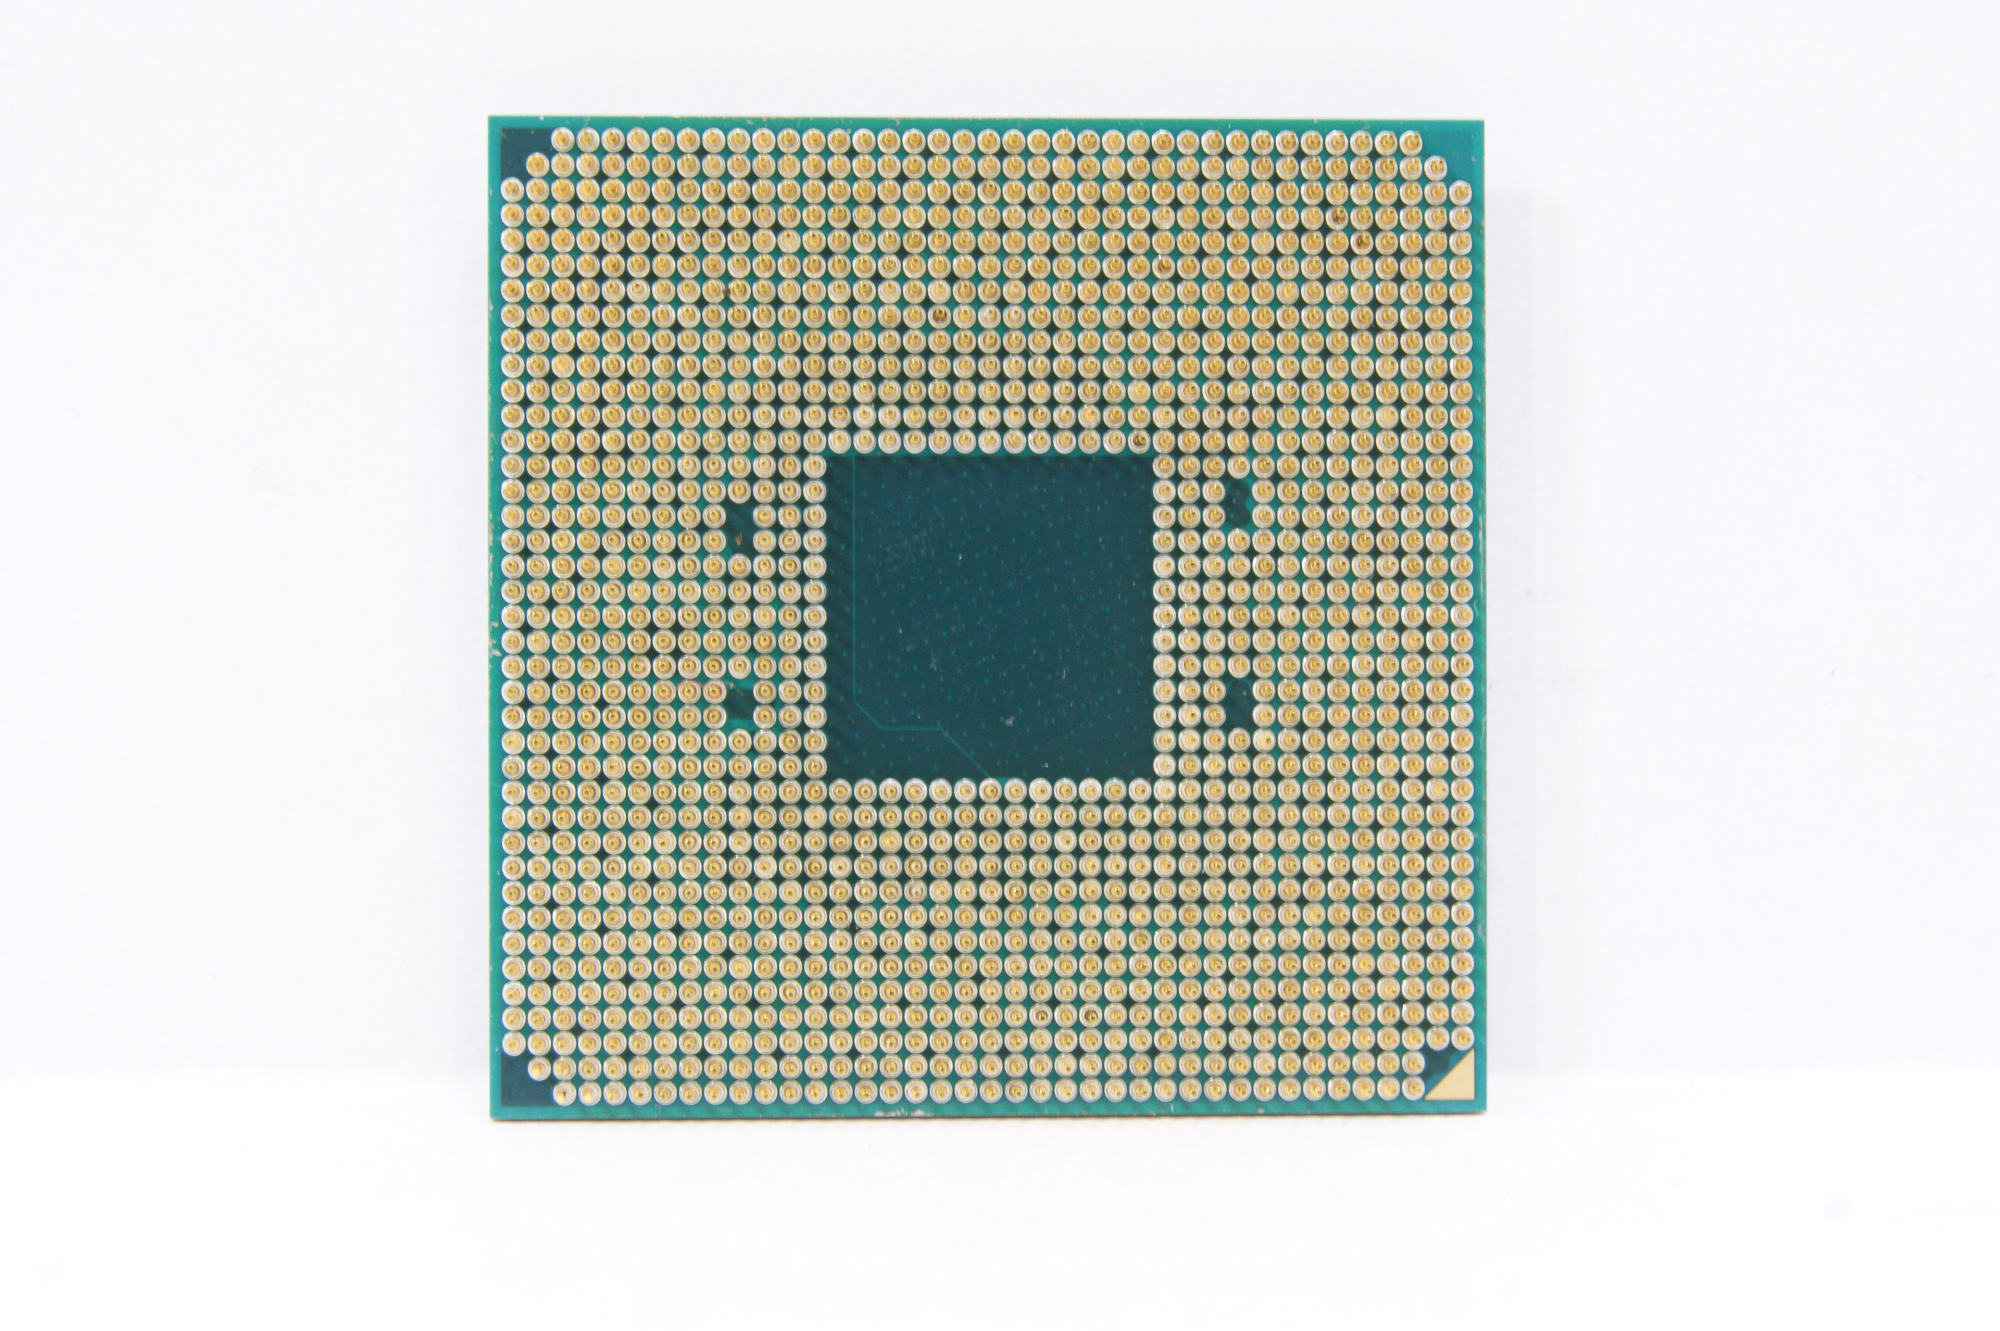 Процессор amd ryzen сокет. Процессор AMD Ryzen 5 2400g. Am4 сокет. AMD am4 процессоры. Процессор AMD Ryzen 5 Pro 2400g.